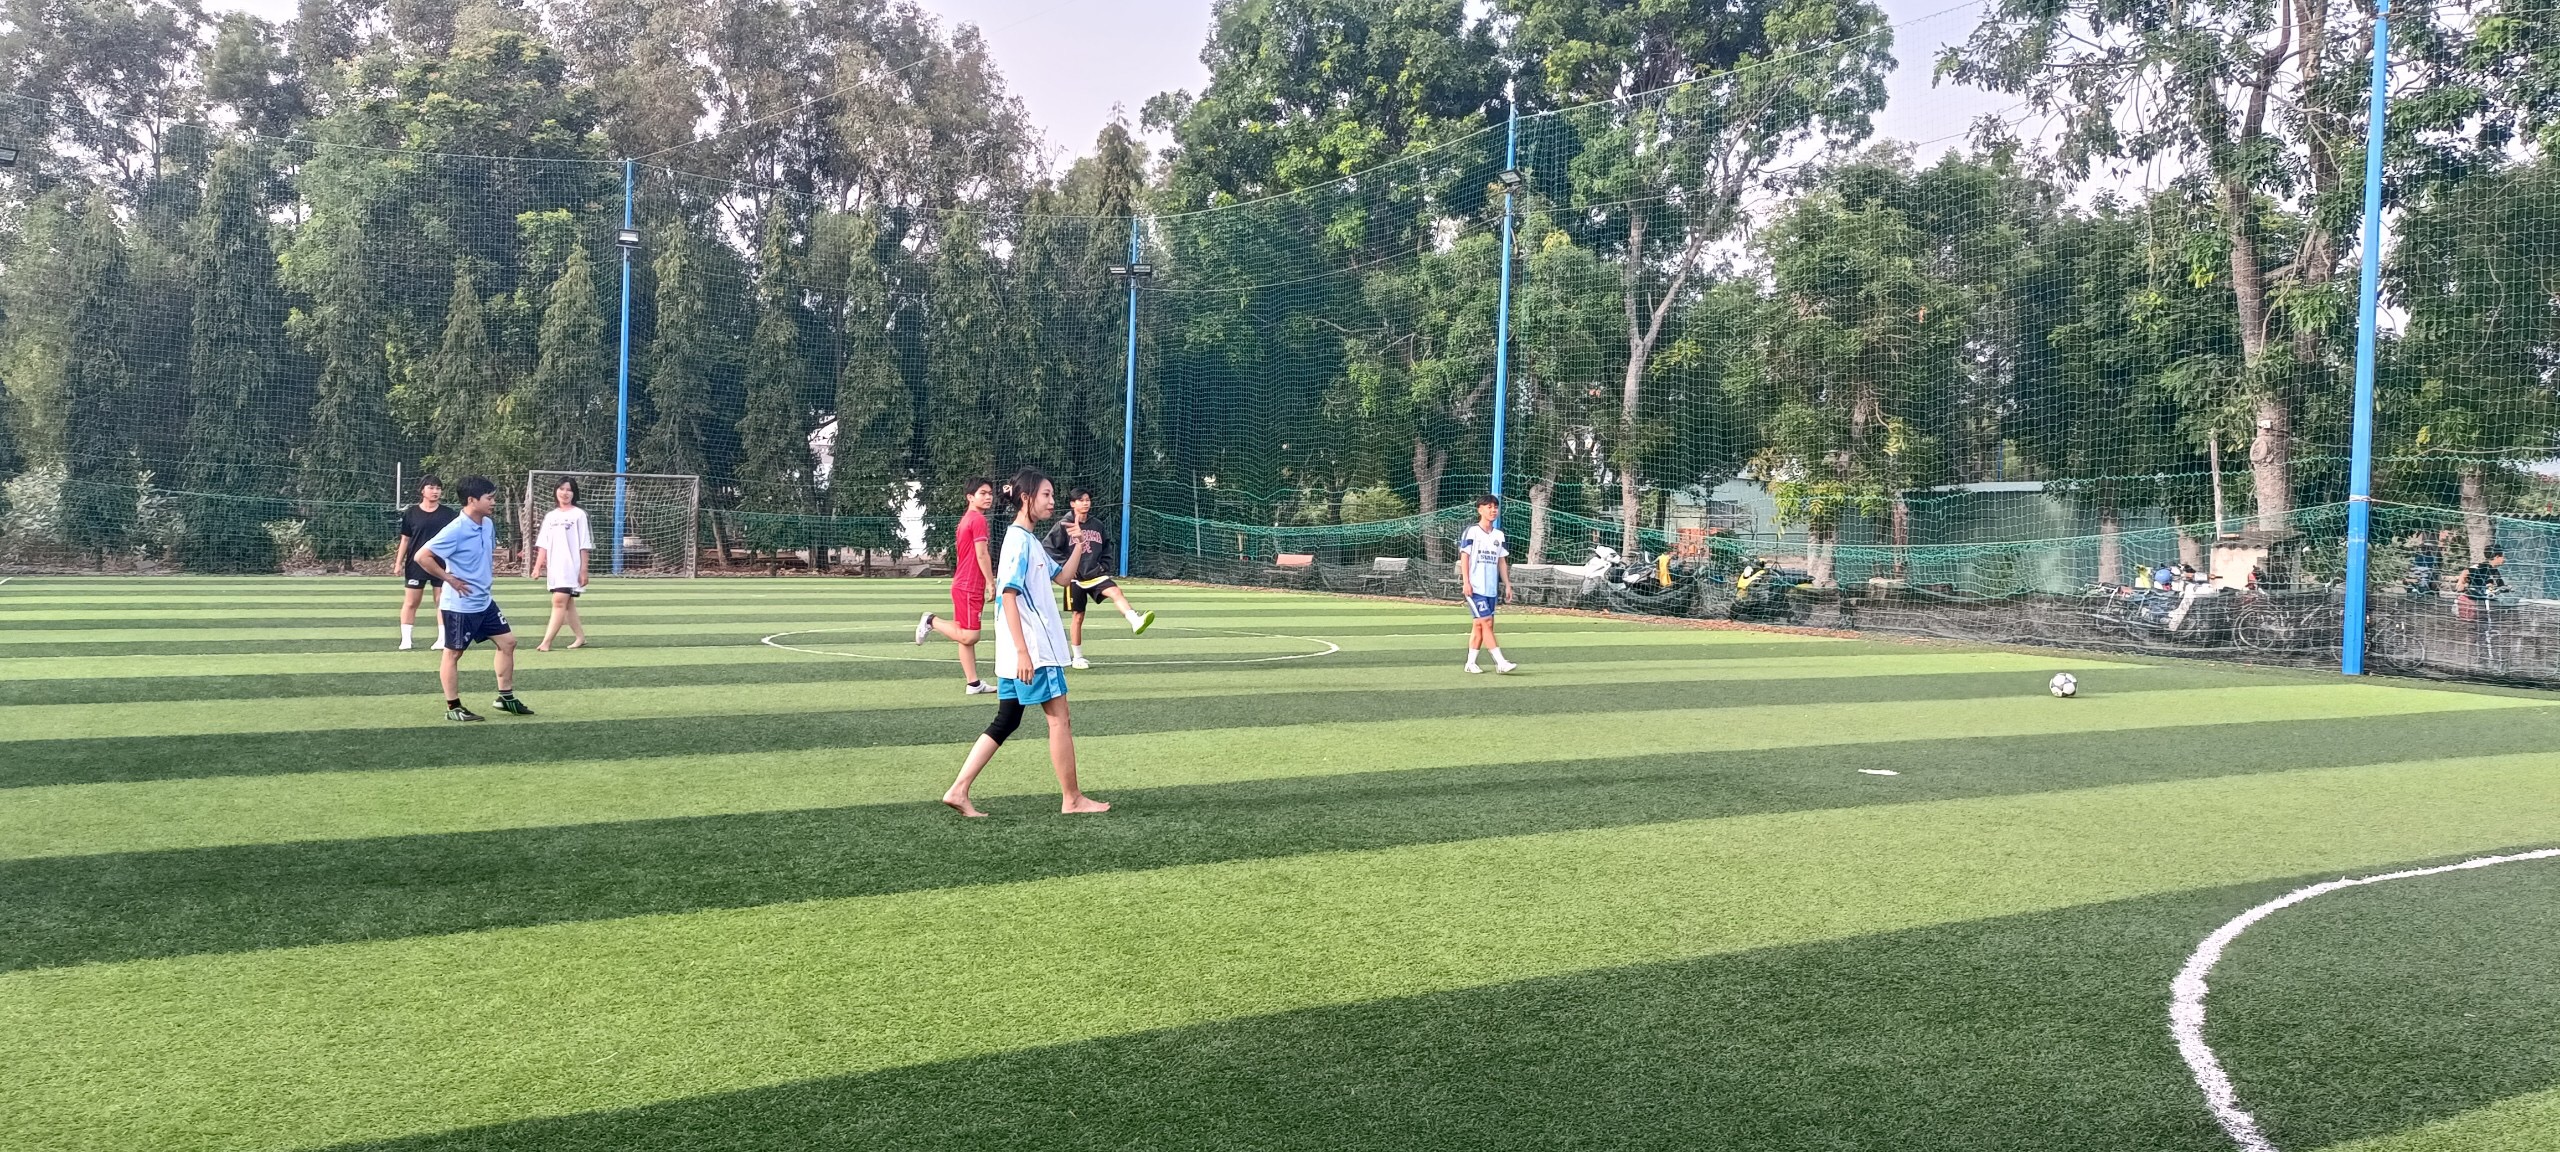 Chuẩn bị cho giải bóng đá MỪNG ĐẢNG - MỪNG XUÂN do huyện đoàn Long Điền tổ chức